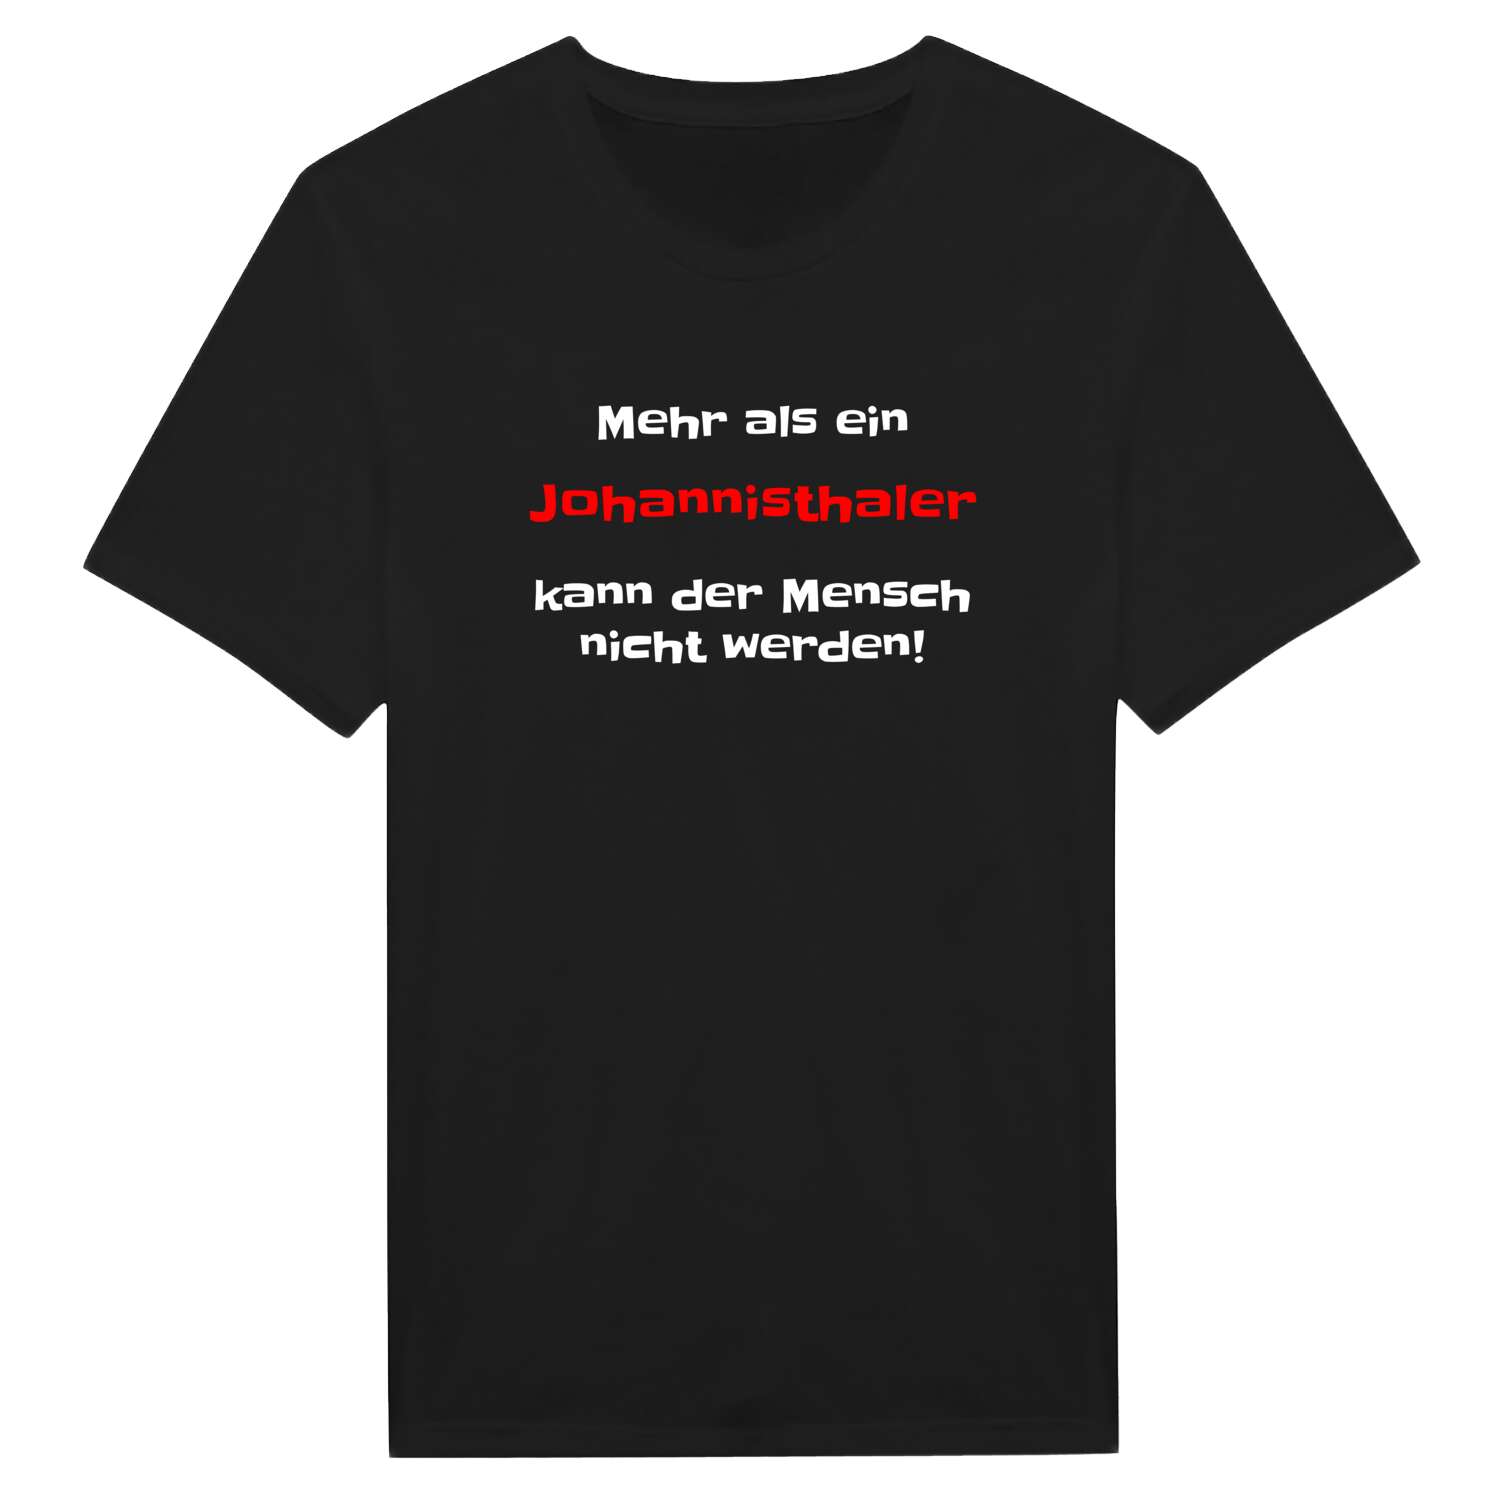 Johannisthal T-Shirt »Mehr als ein«